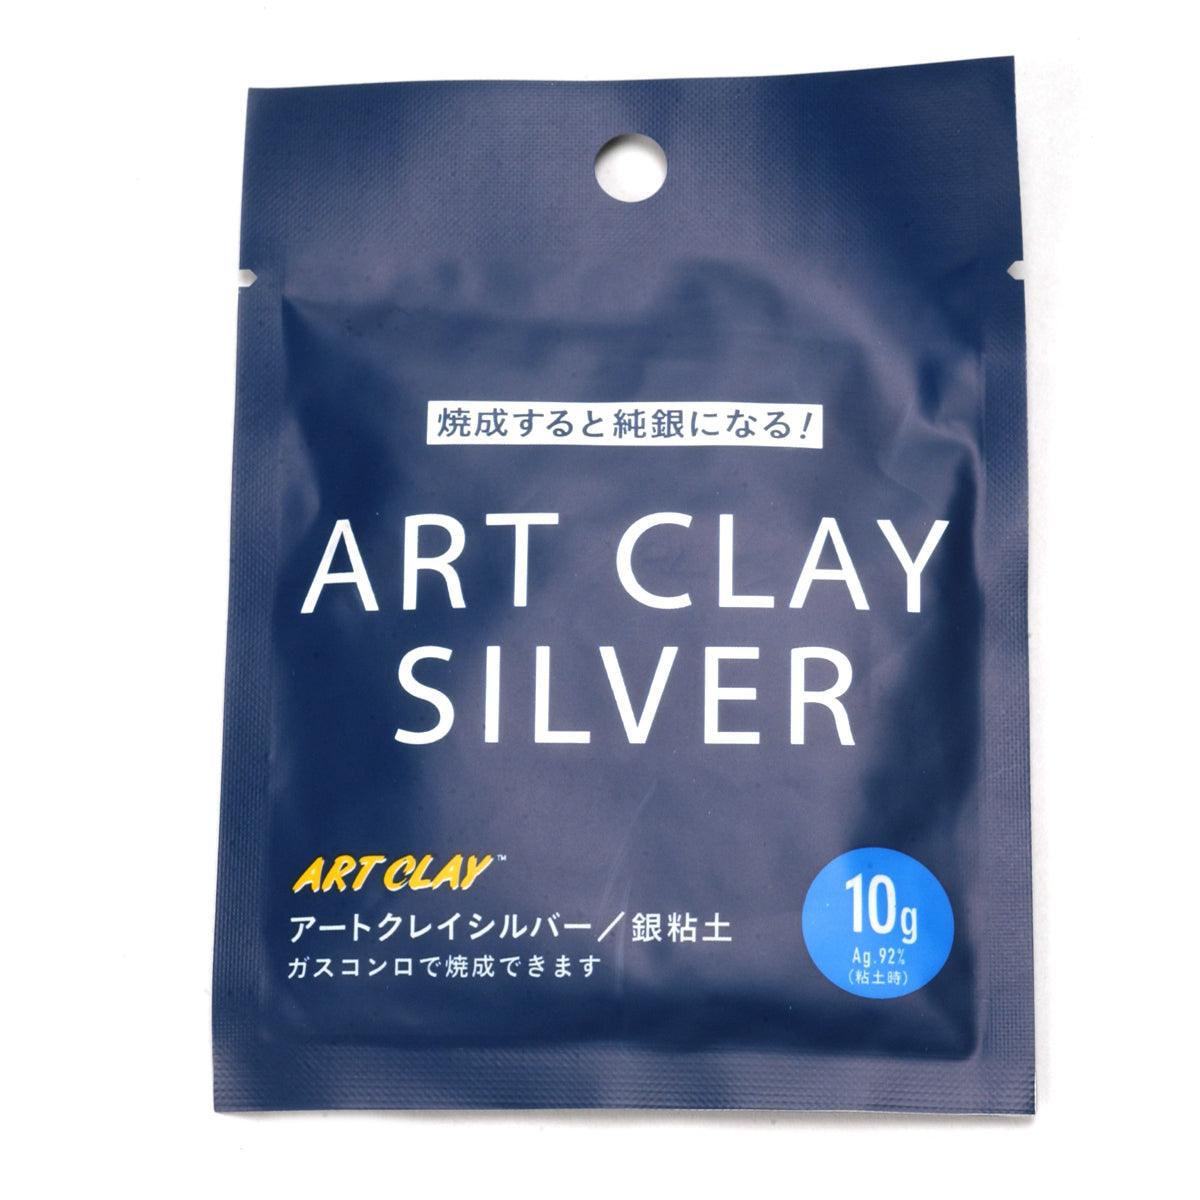 ArtClay Silver 10 gram Package